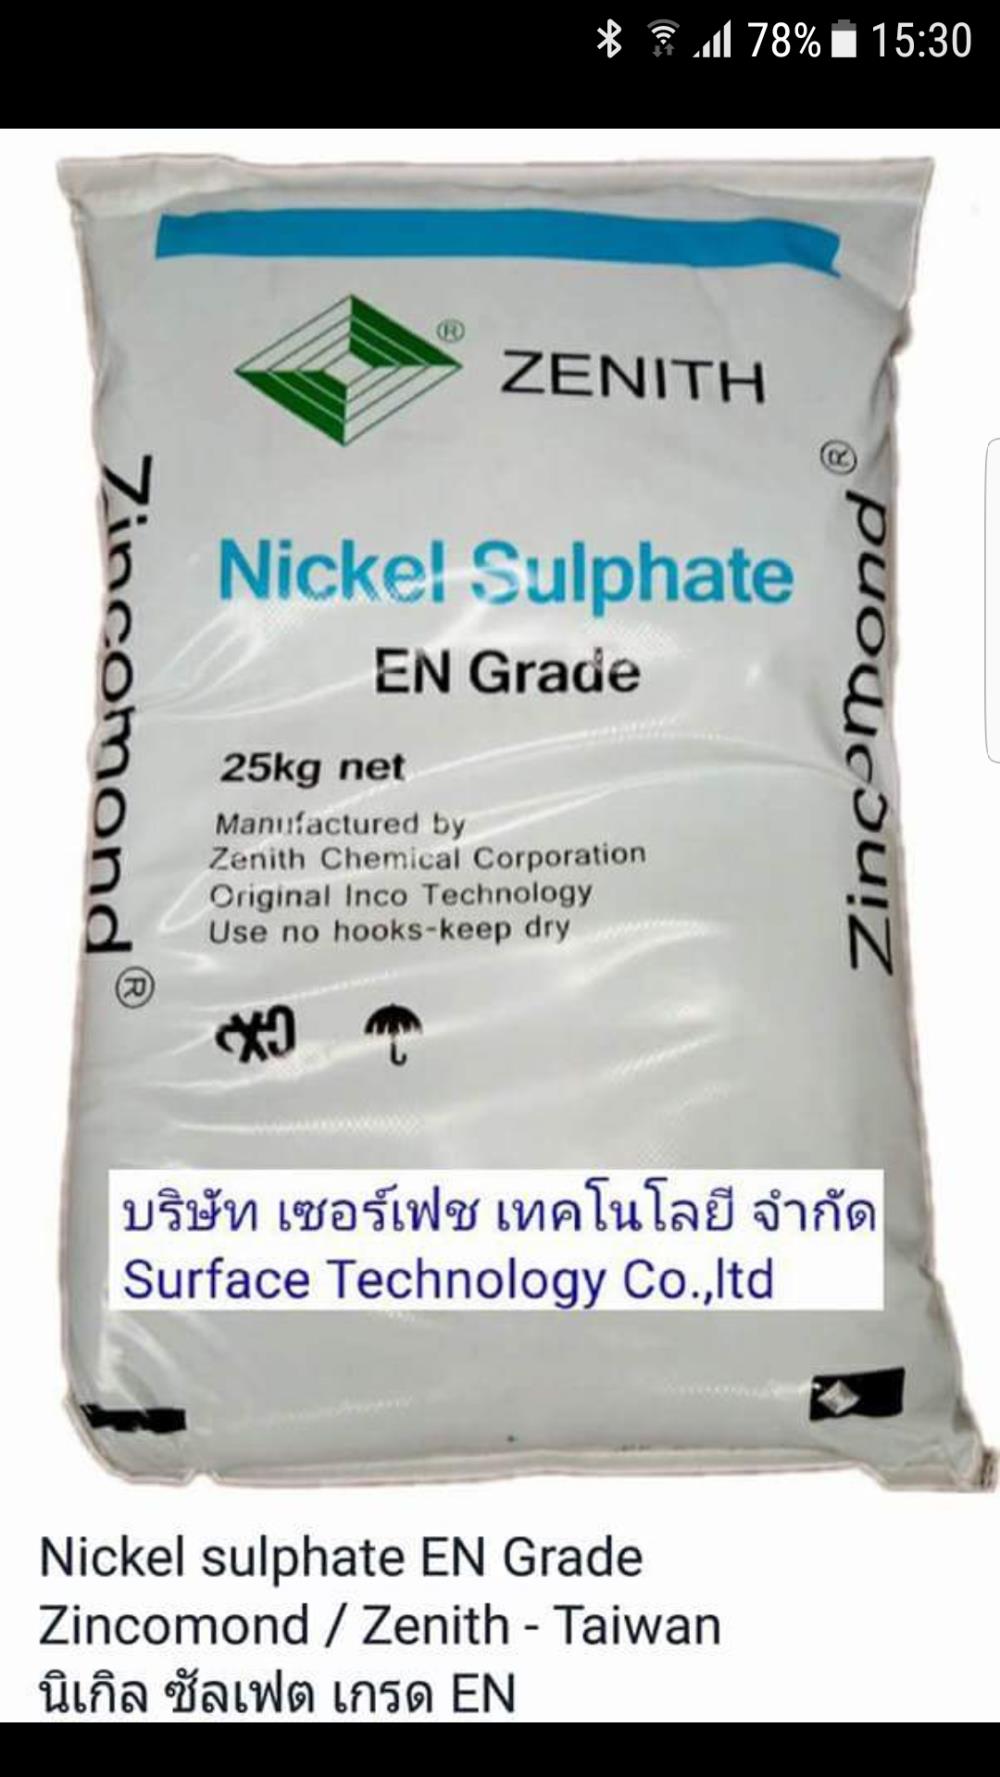 นิเกิลซัลเฟต   Nickel Sulphate  NiSo4,นิเกิลซัลเฟต  Nickel Sulphate NiSo4,Zincomom,Chemicals/Coatings and Finishes/Coatings